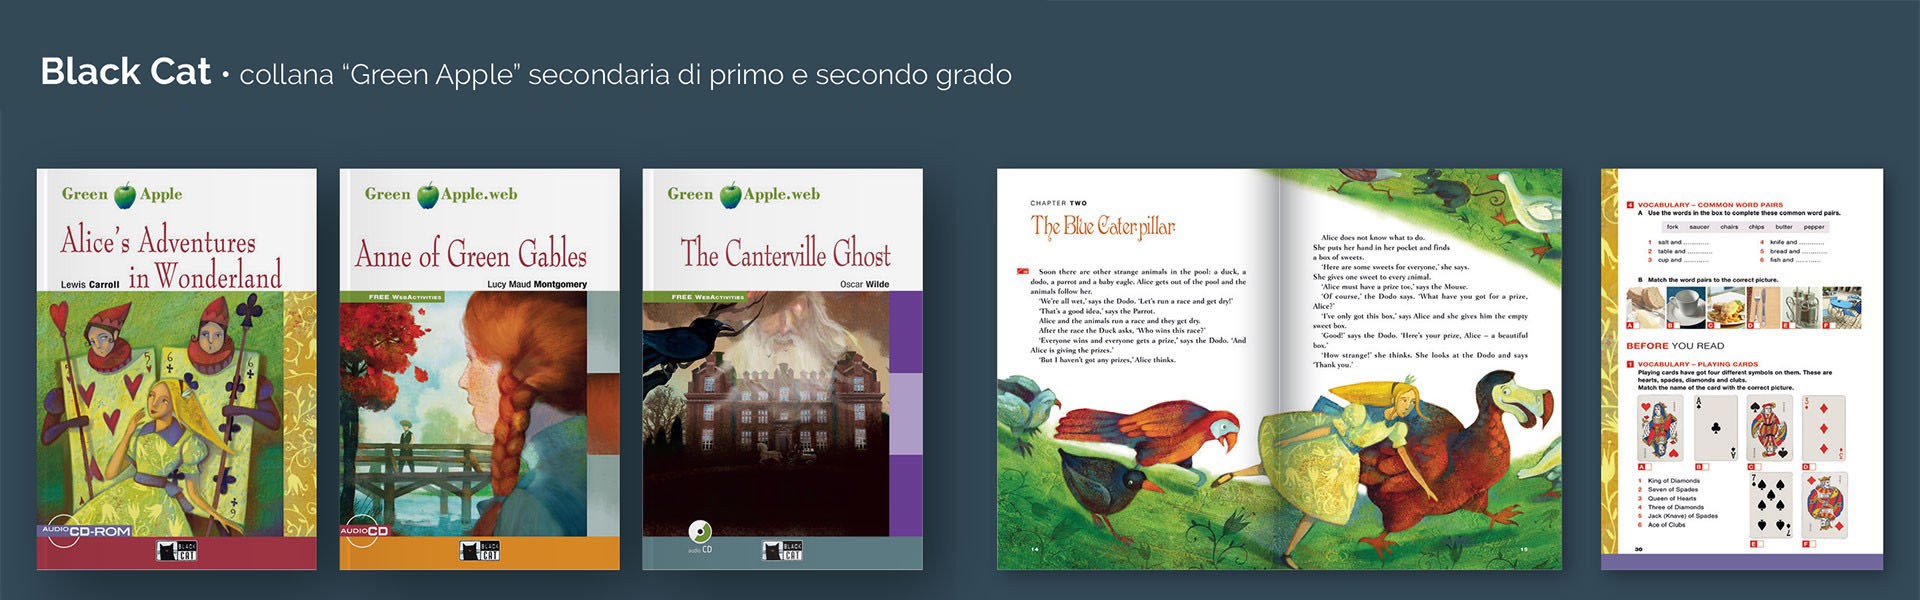 Progetti grafici e editoriali | Graphic design Genova | Editorial layout | Graphic design Genova